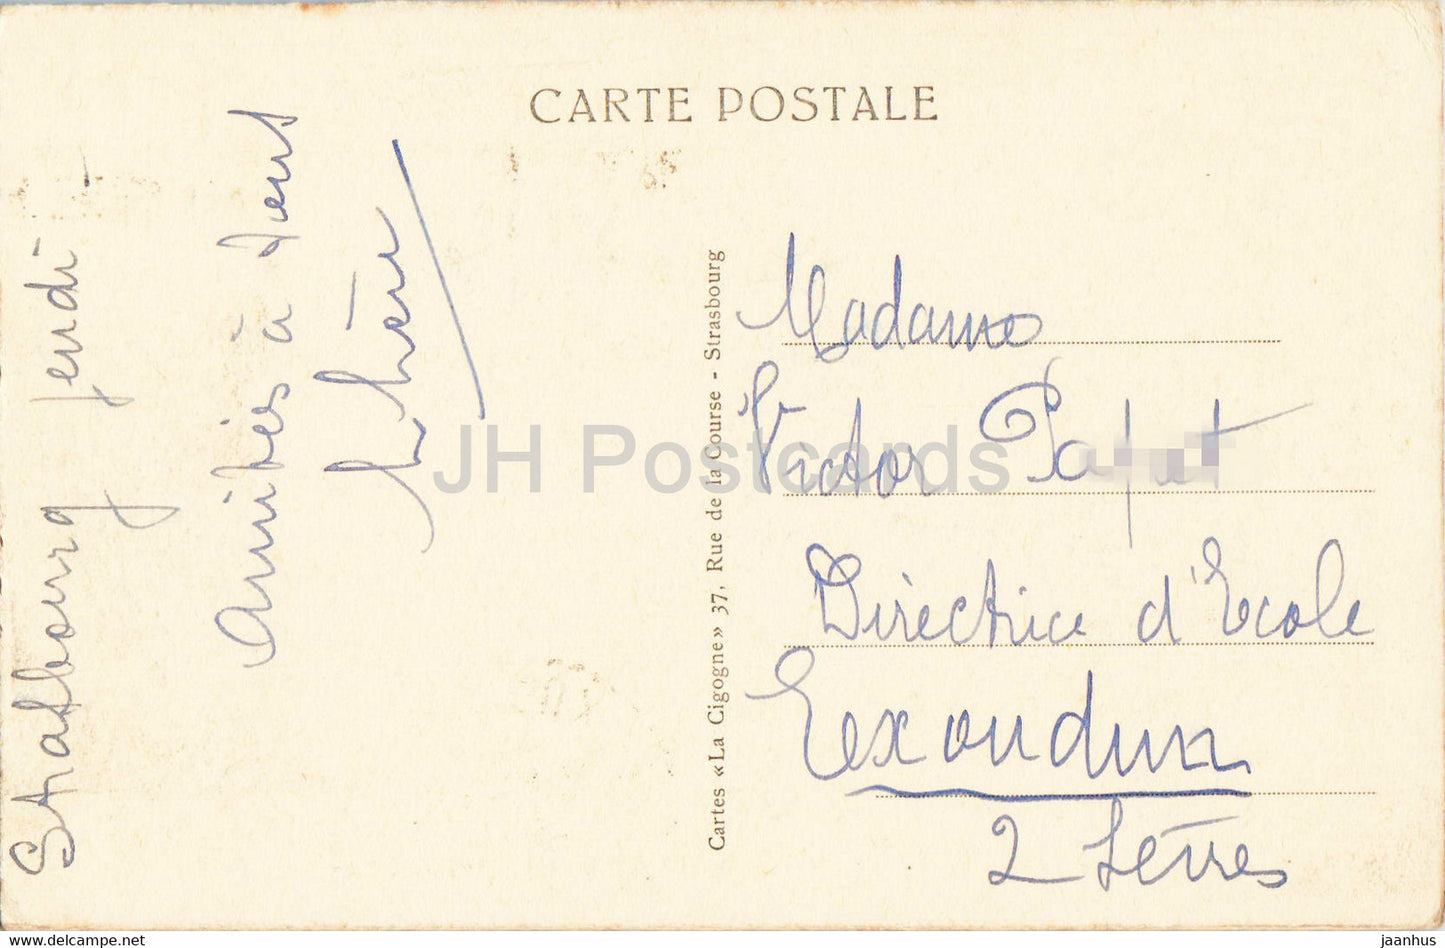 Strasbourg i E - Strasbourg - Place de la République et Palais du Rhin - 1446 - carte postale ancienne - 1937 - France - occasion